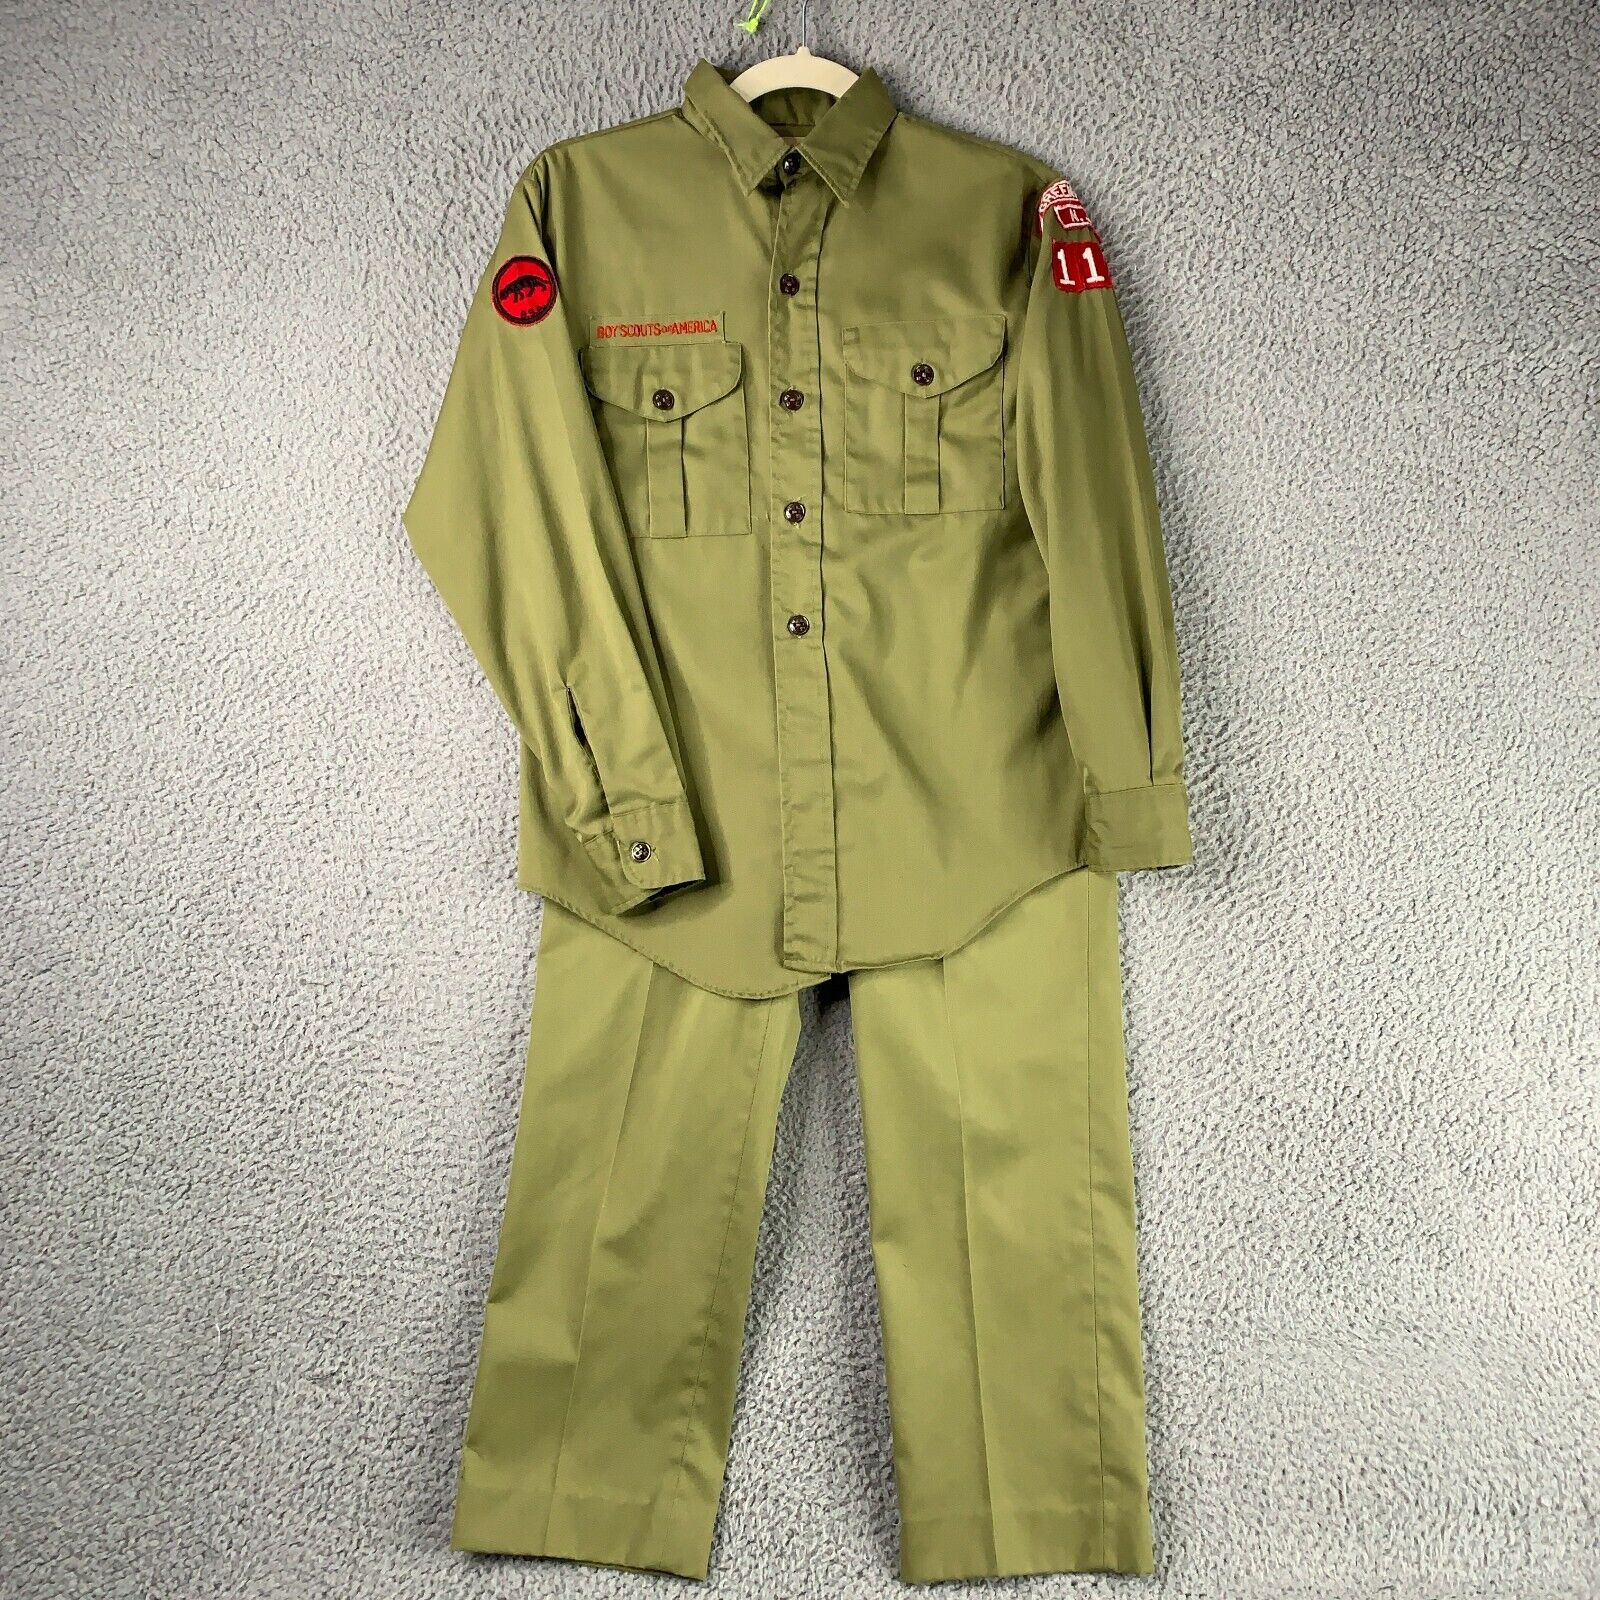 Vintage Boy Scouts Uniform Shirt Pants BSA 1950s 1960s Greenfields NJ Retro Camp